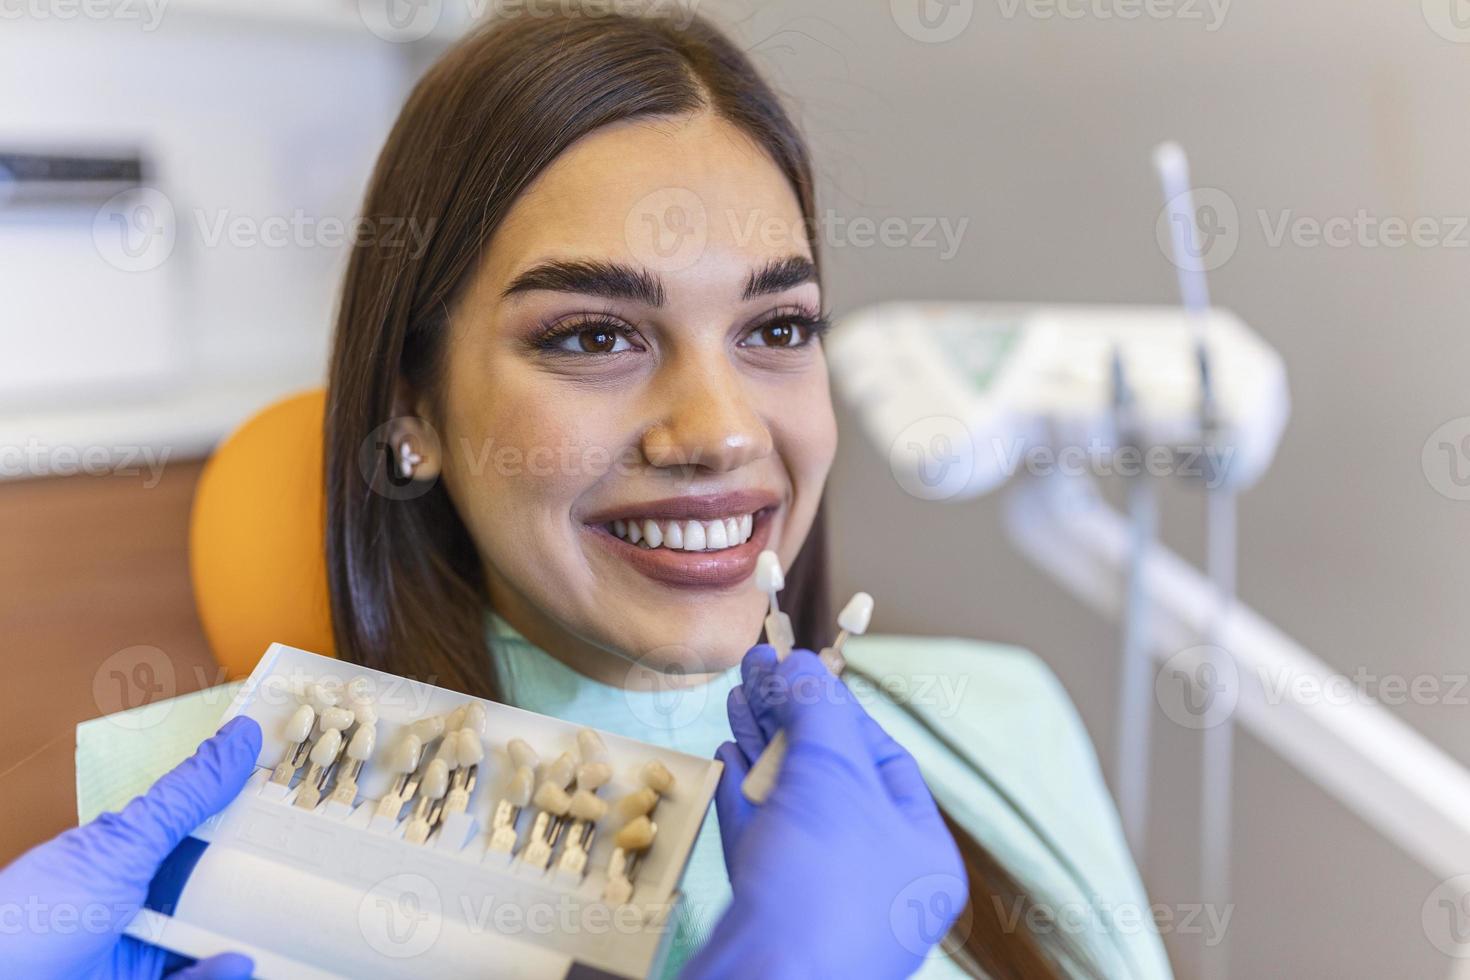 patiënten tanden schaduw met monsters voor bleken behandeling.bekeken mondeling hygiëne. vrouw Bij de tandarts. vrouw in de tandheelkundig stoel tandheelkundig behandeling gedurende chirurgie. foto